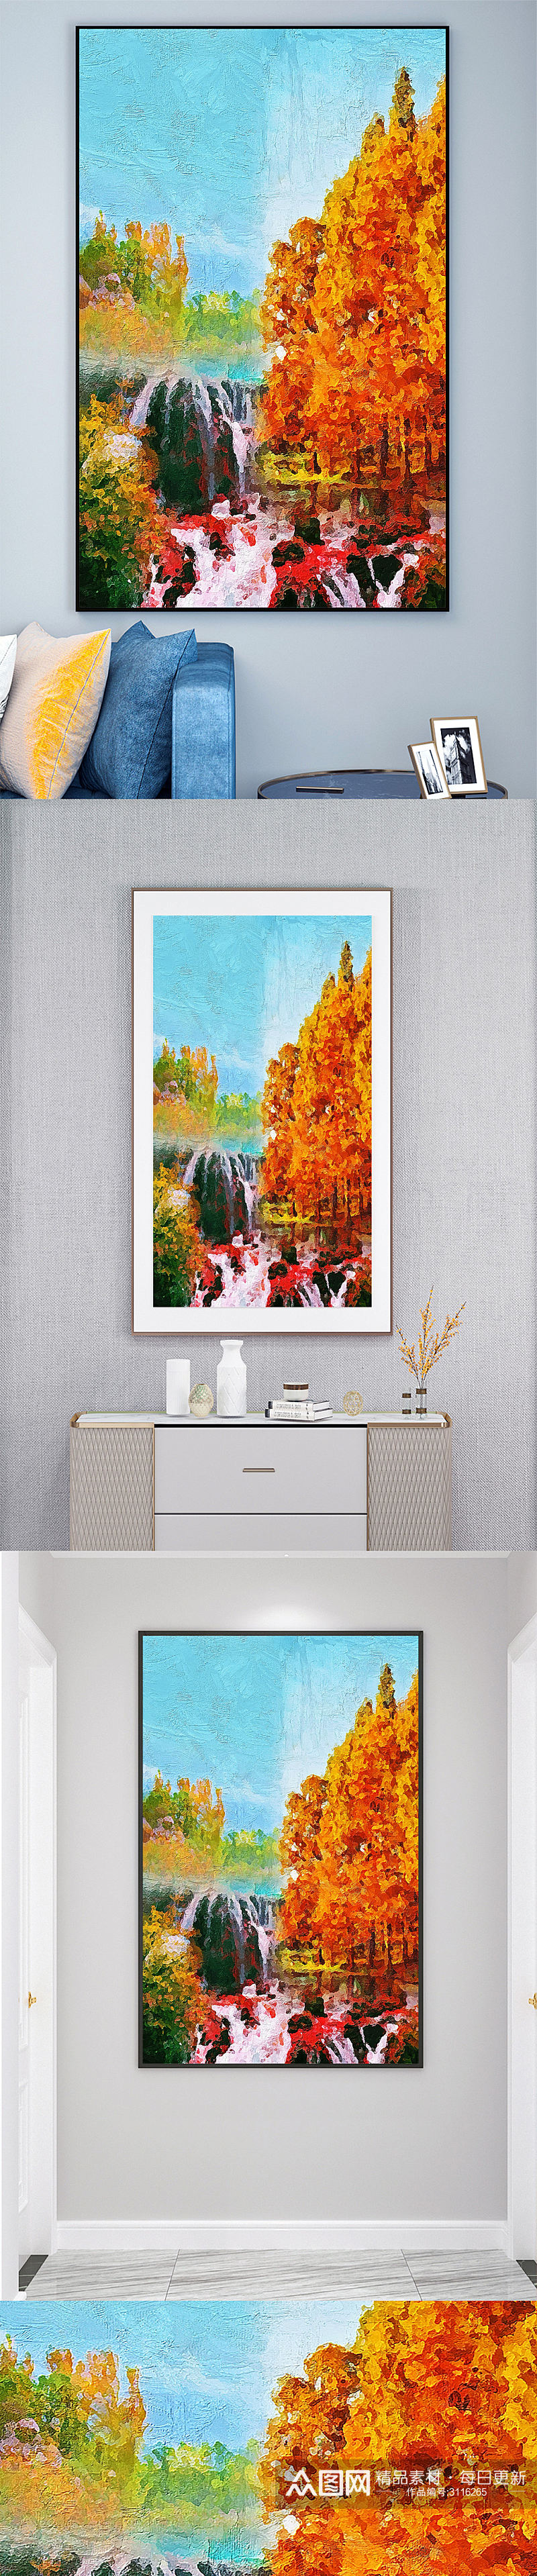 秋季风景壁画装饰画素材